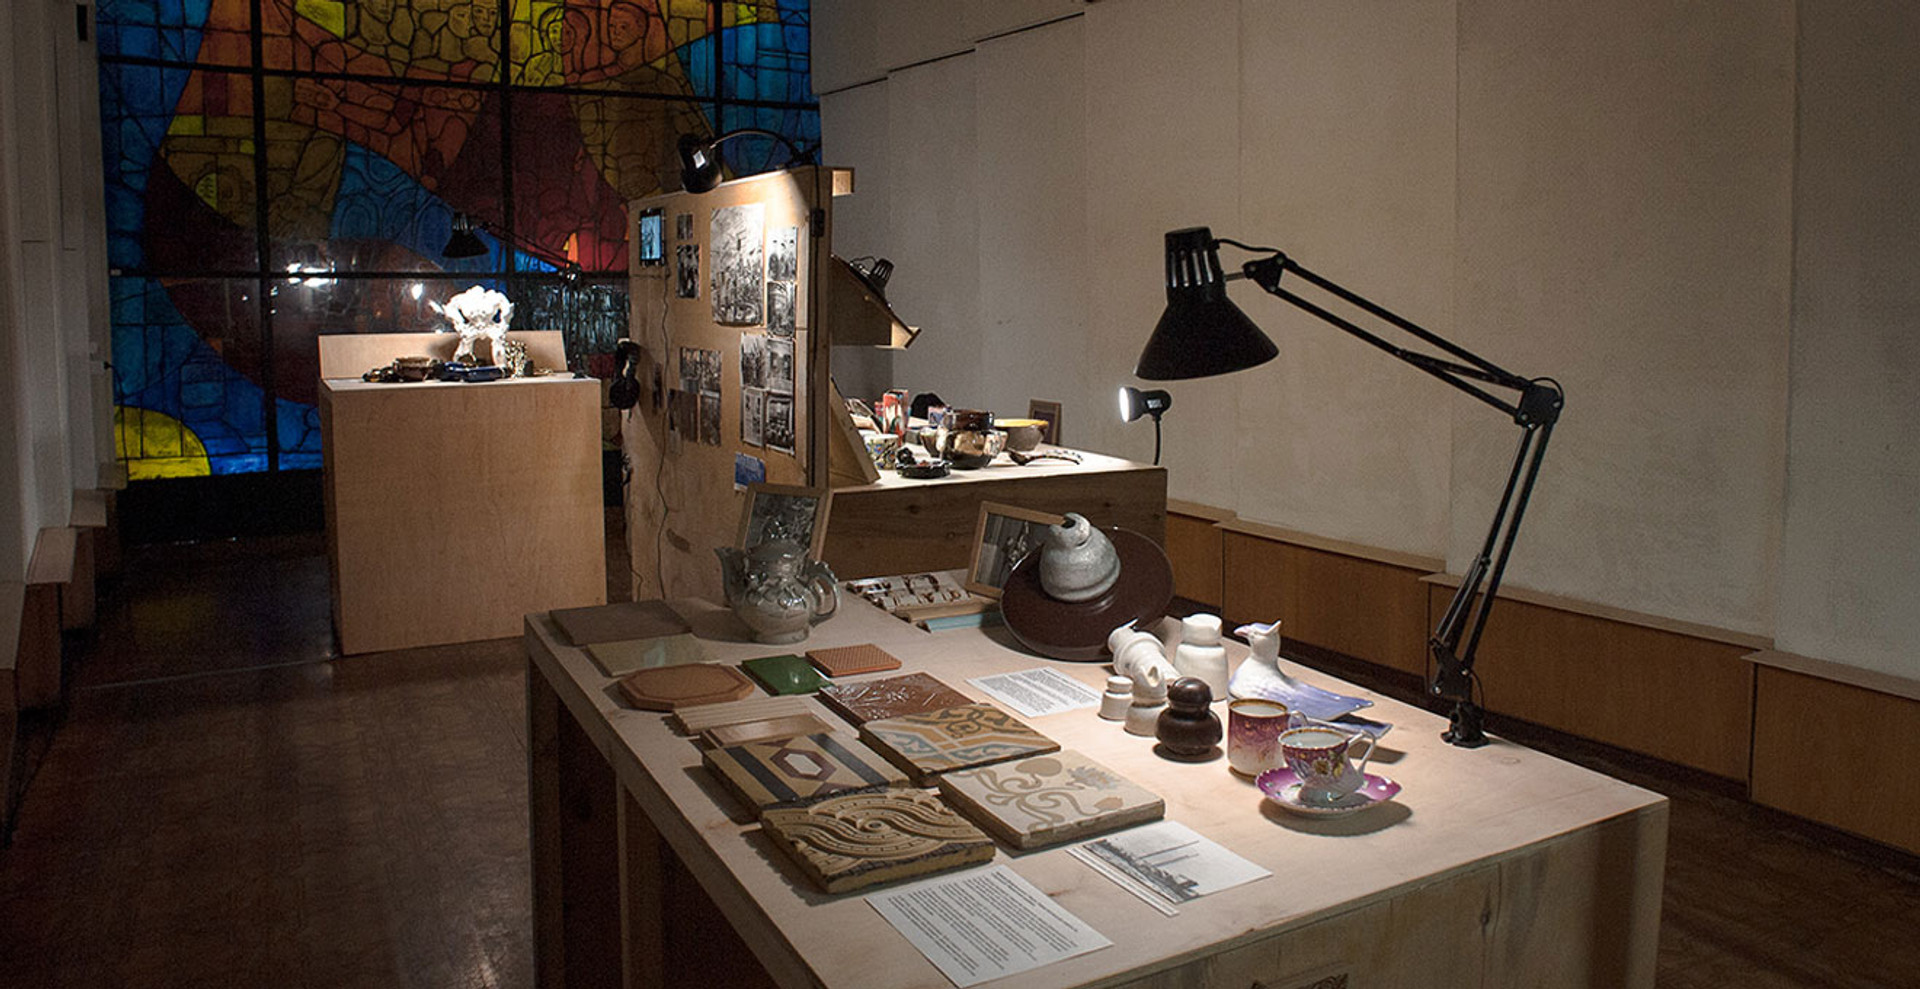 «Славкерампродукт»: як провінційний музей став сучасною дослідницькою лабораторією